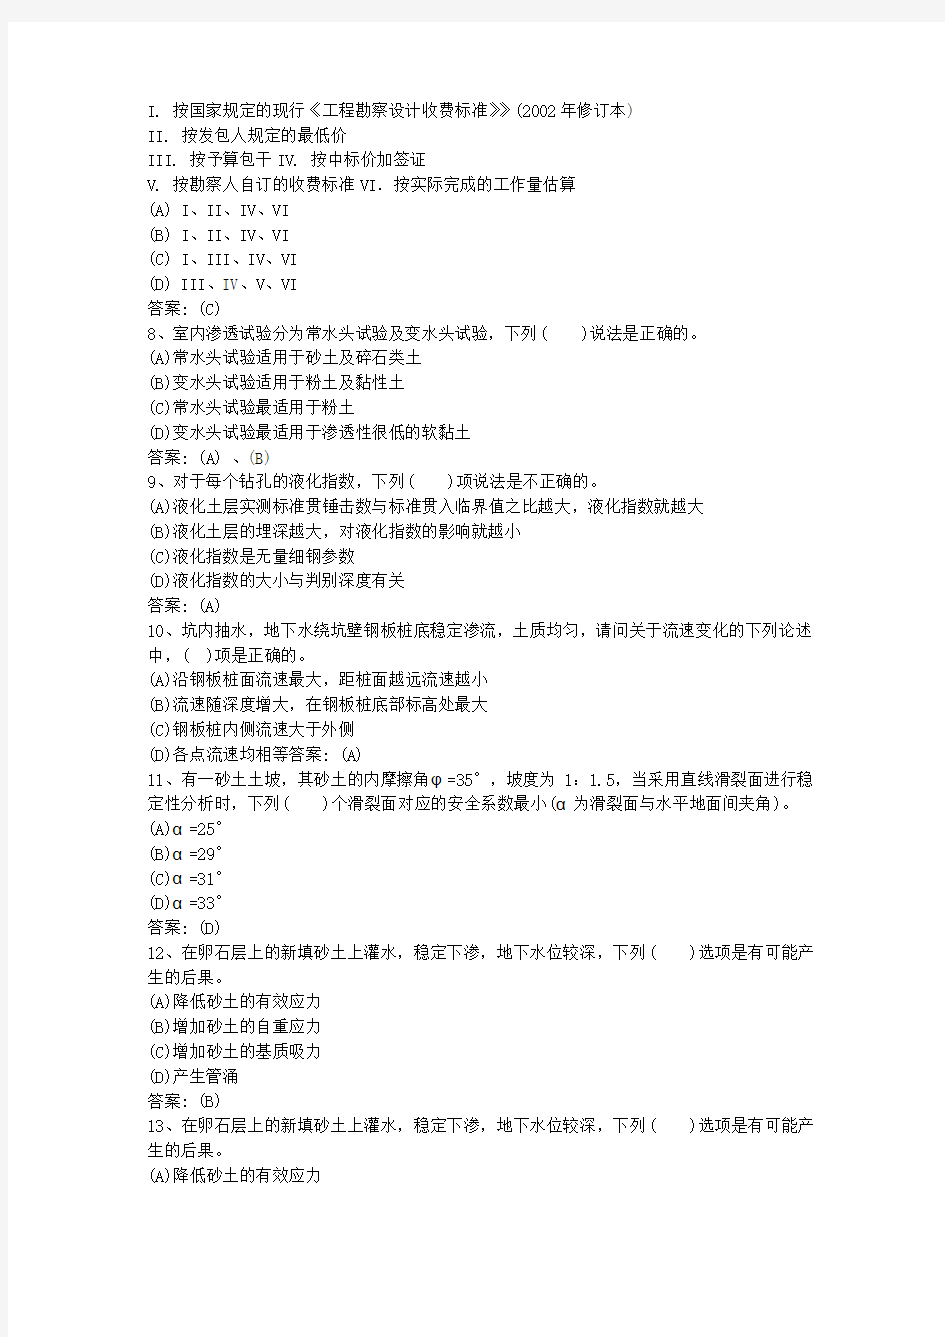 2015年黑龙江省岩土工程师考试须注意的细节问题(必备资料)